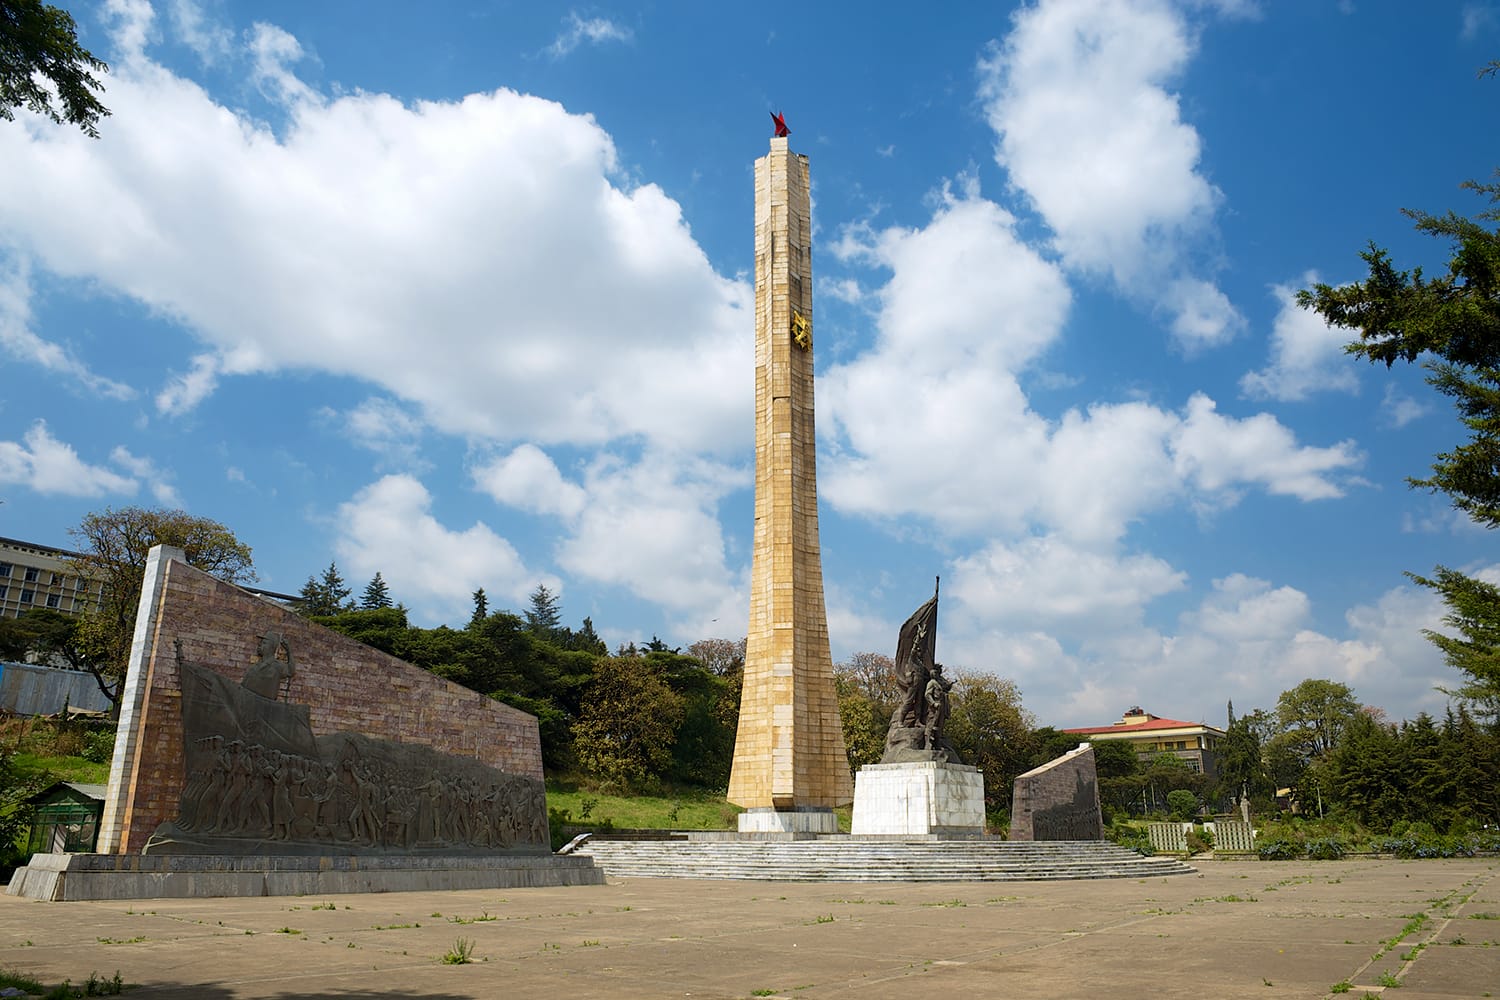 Μνημείο Tiglachin (ή μνημείο Derg) για Σοβιετικούς και Κουβανούς στρατιώτες που συμμετείχαν στον πόλεμο του Ogaden στην Αντίς Αμπέμπα της Αιθιοπίας.